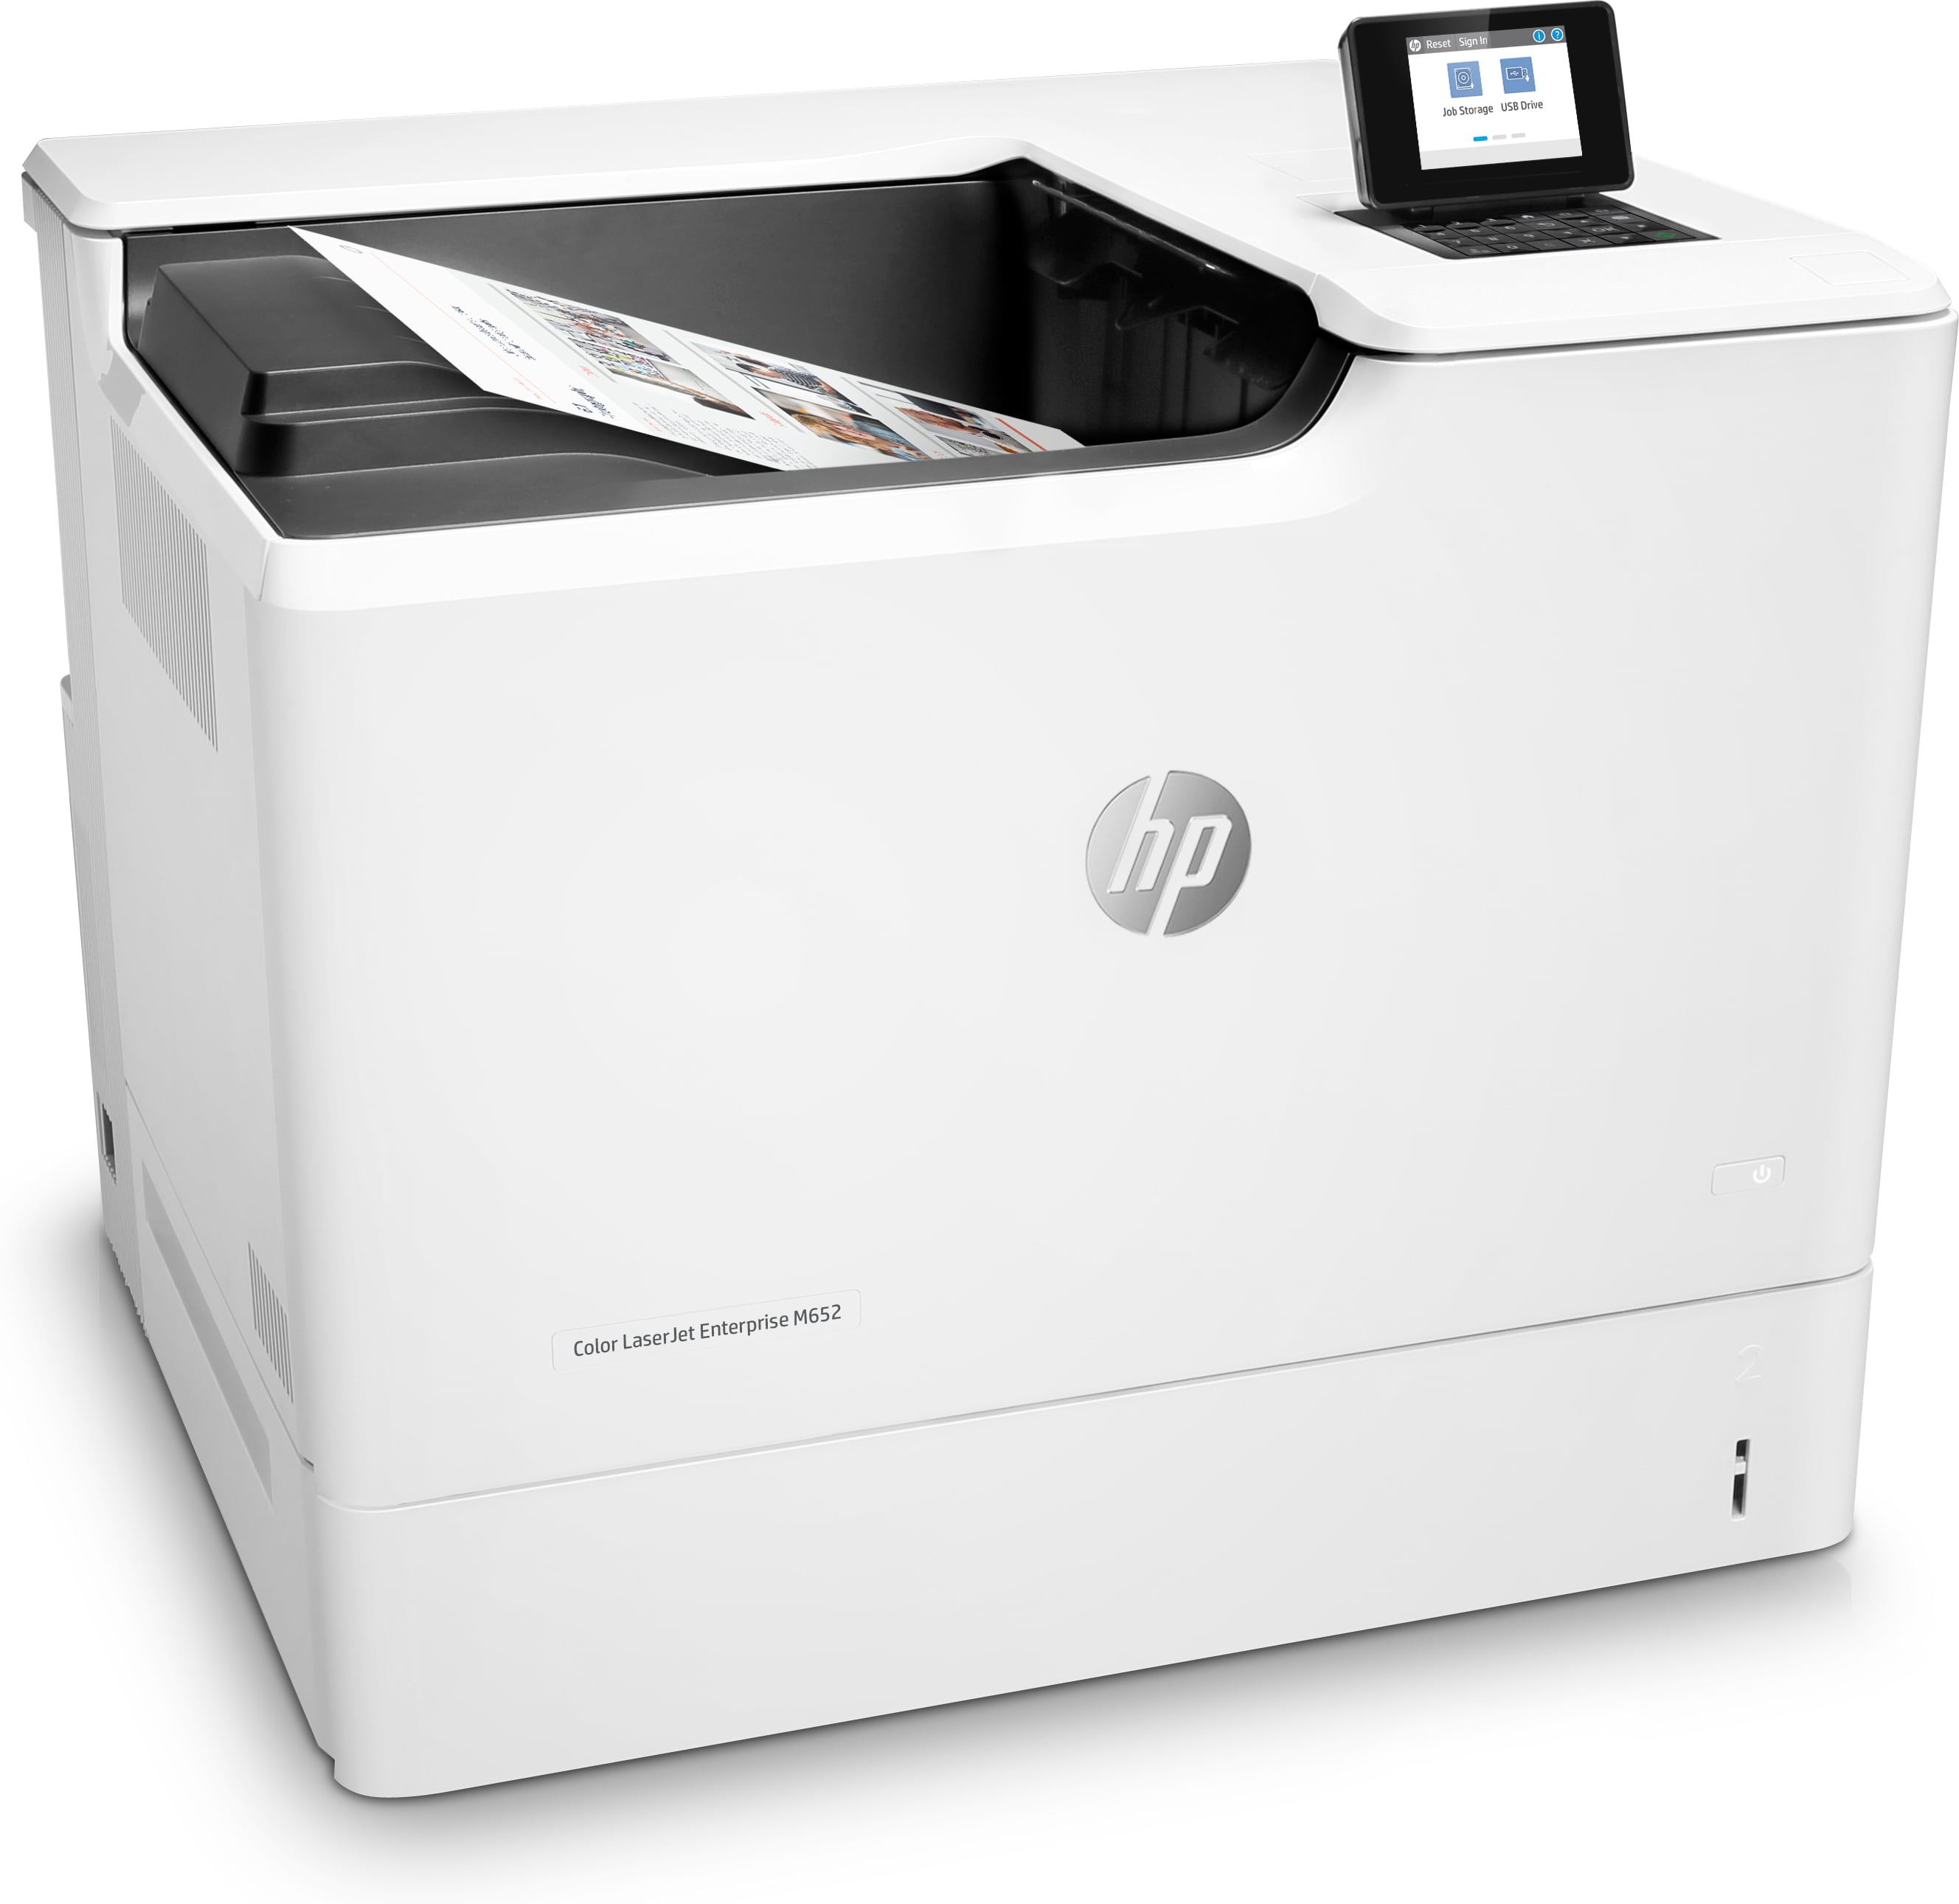 HP LaserJet M652dn Laser Printer - Color - Ethernet